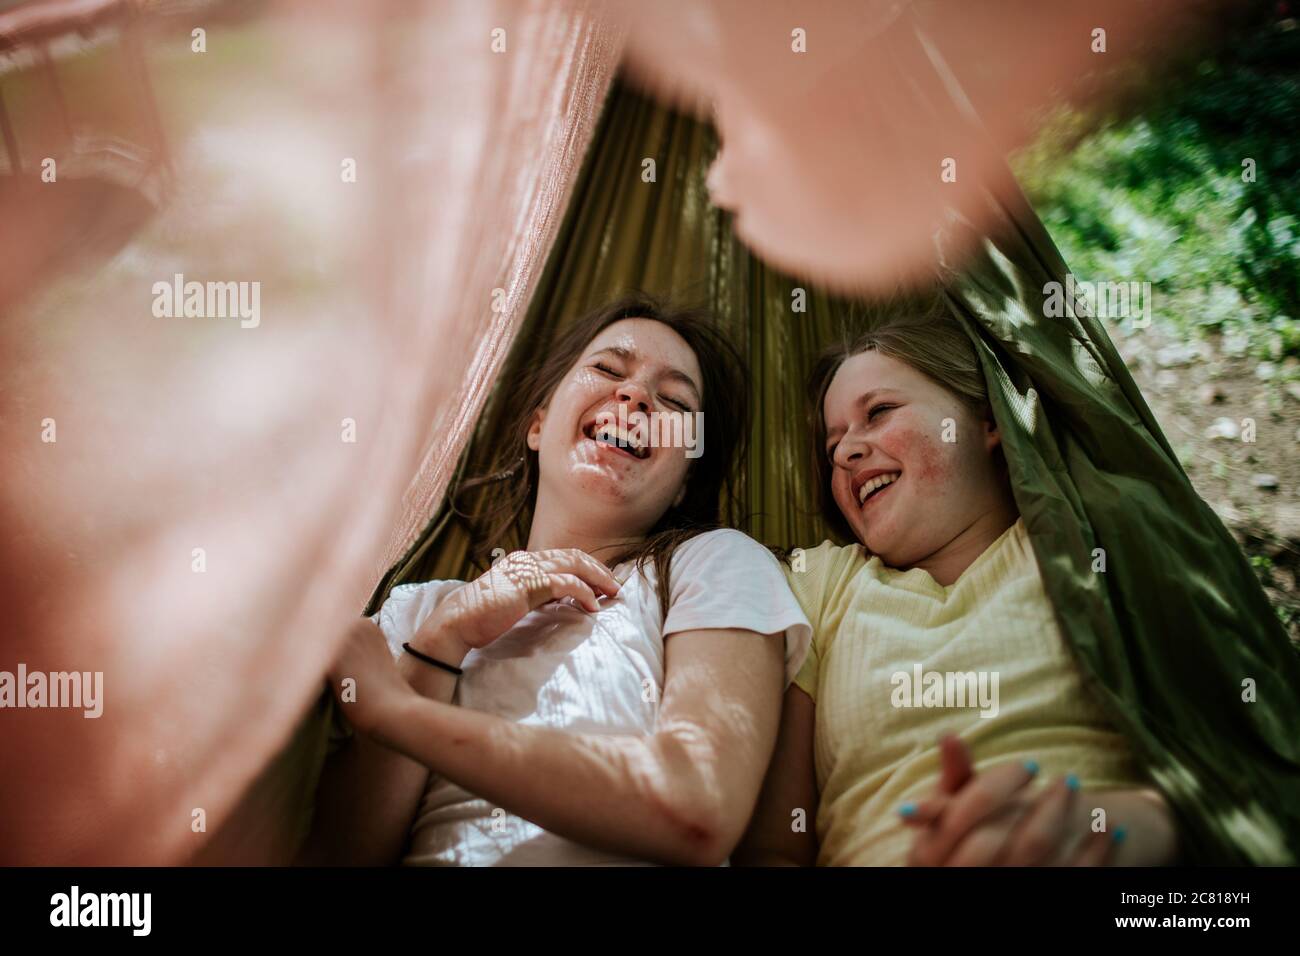 Deux adolescentes qui pontent dans un hamac riant et souriant dehors Banque D'Images